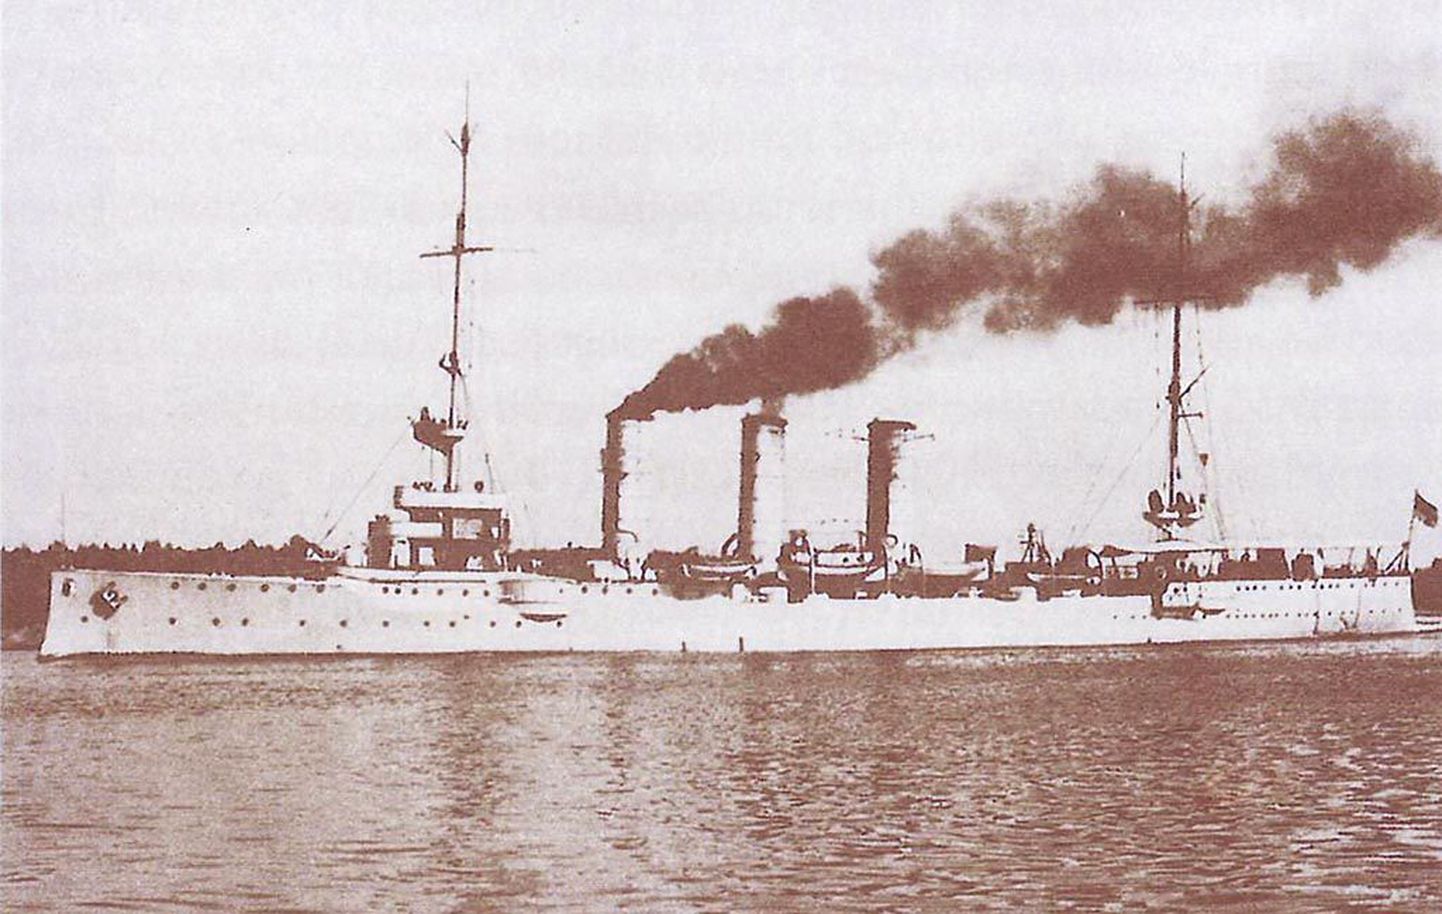 Saksa kergristleja Augsburg osales sõjategevuses Liivi lahel. Kahju sõjalaev märkimisväärselt ei teinud, kuid paanikat külvas küllaga.